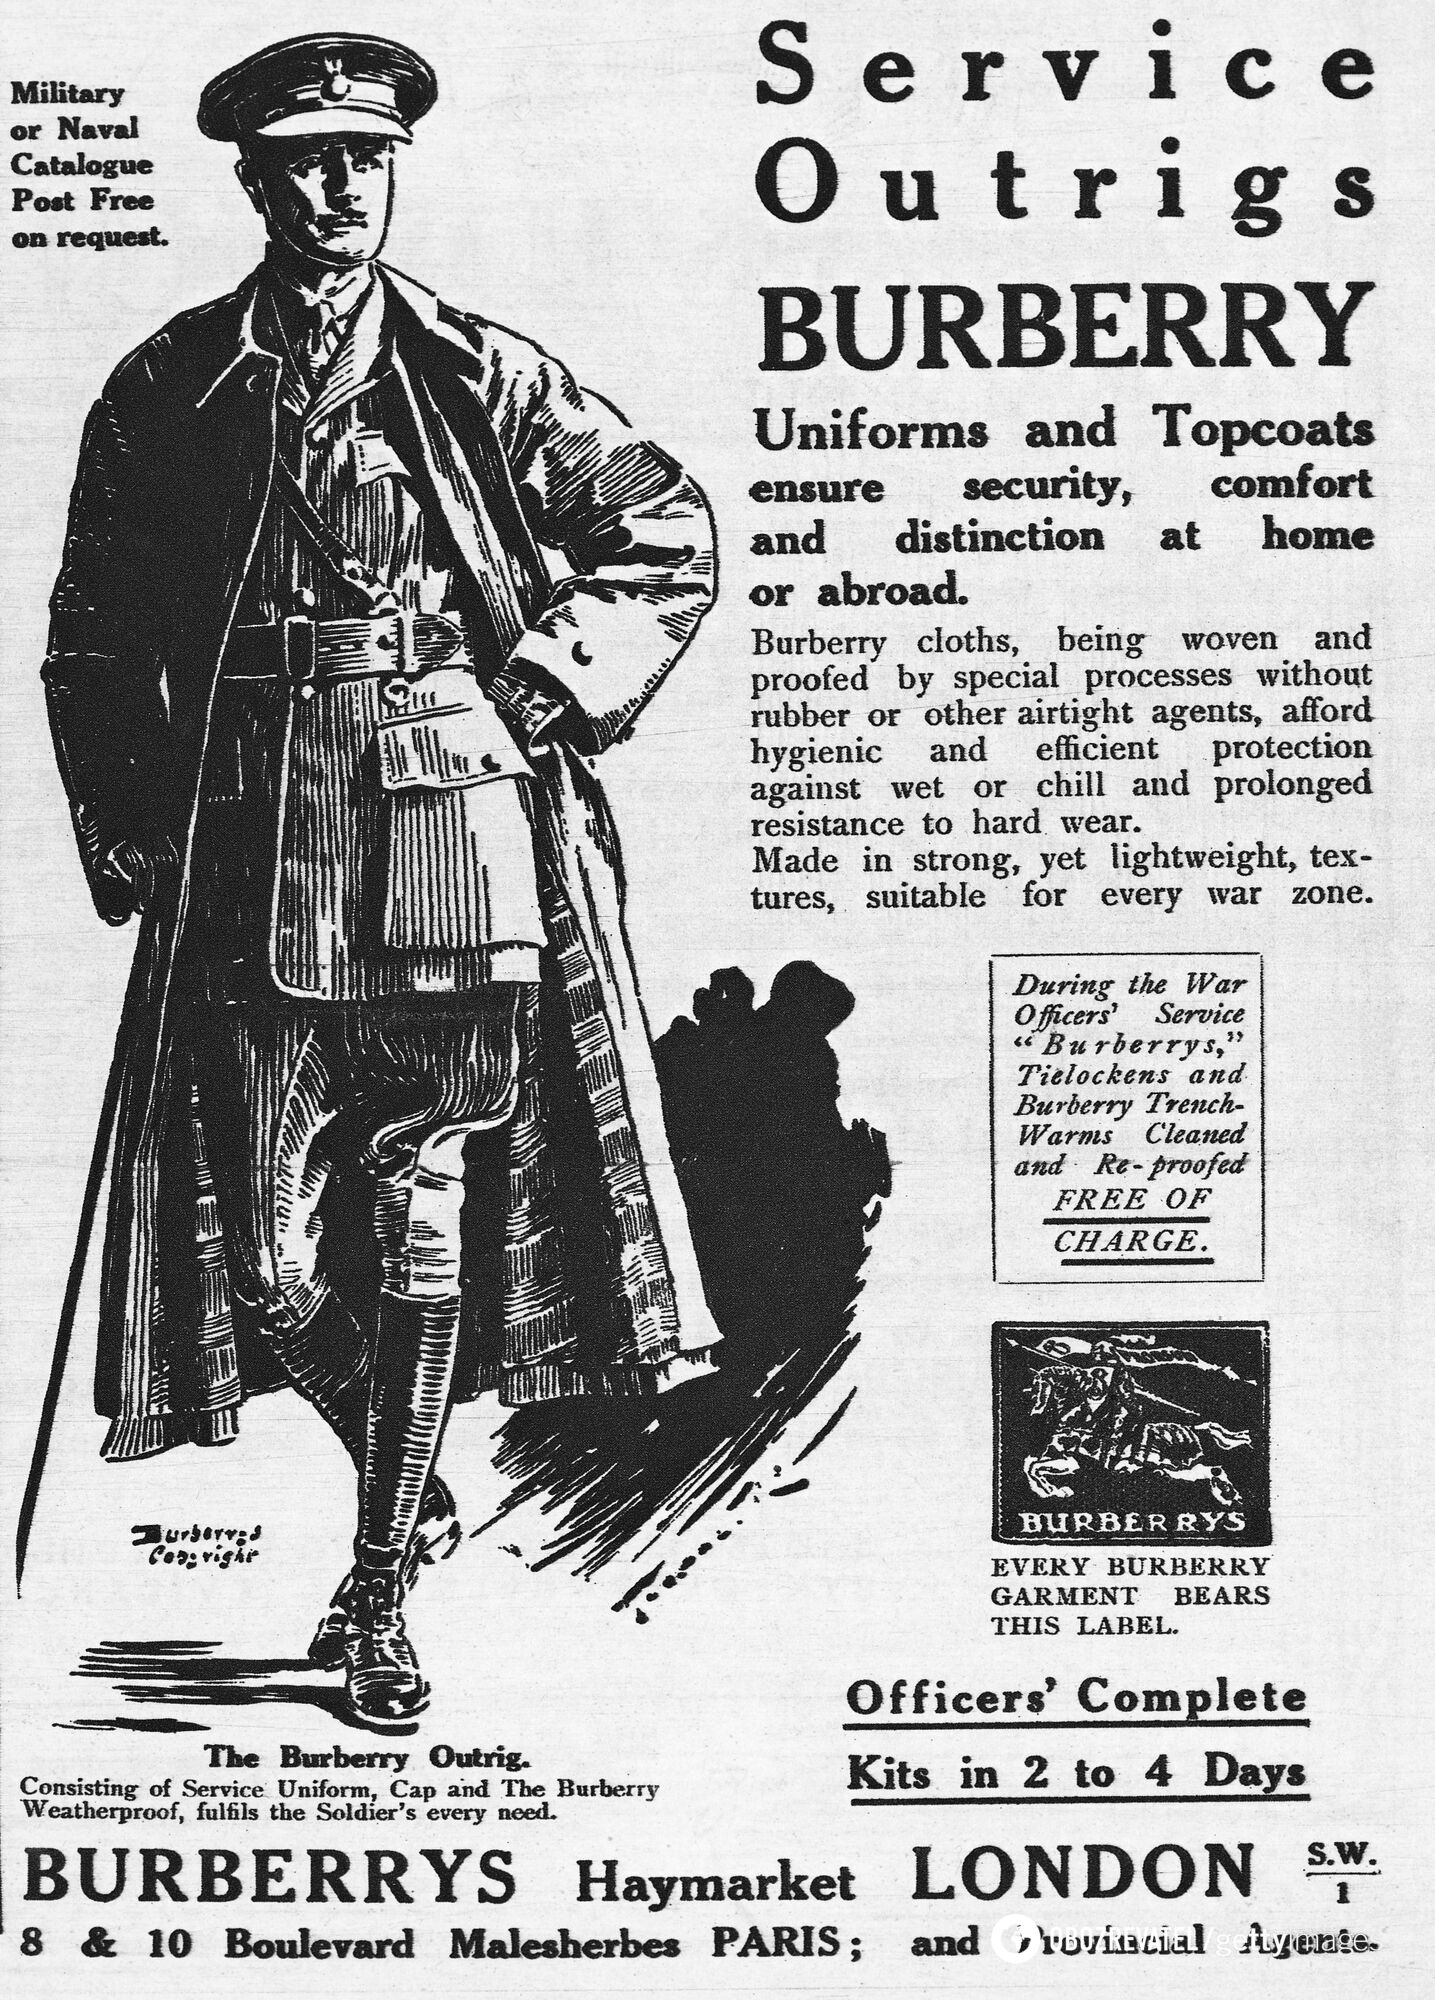 Thomas Burberry wynalazł funkcjonalny płaszcz przeciwdeszczowy dla żołnierzy